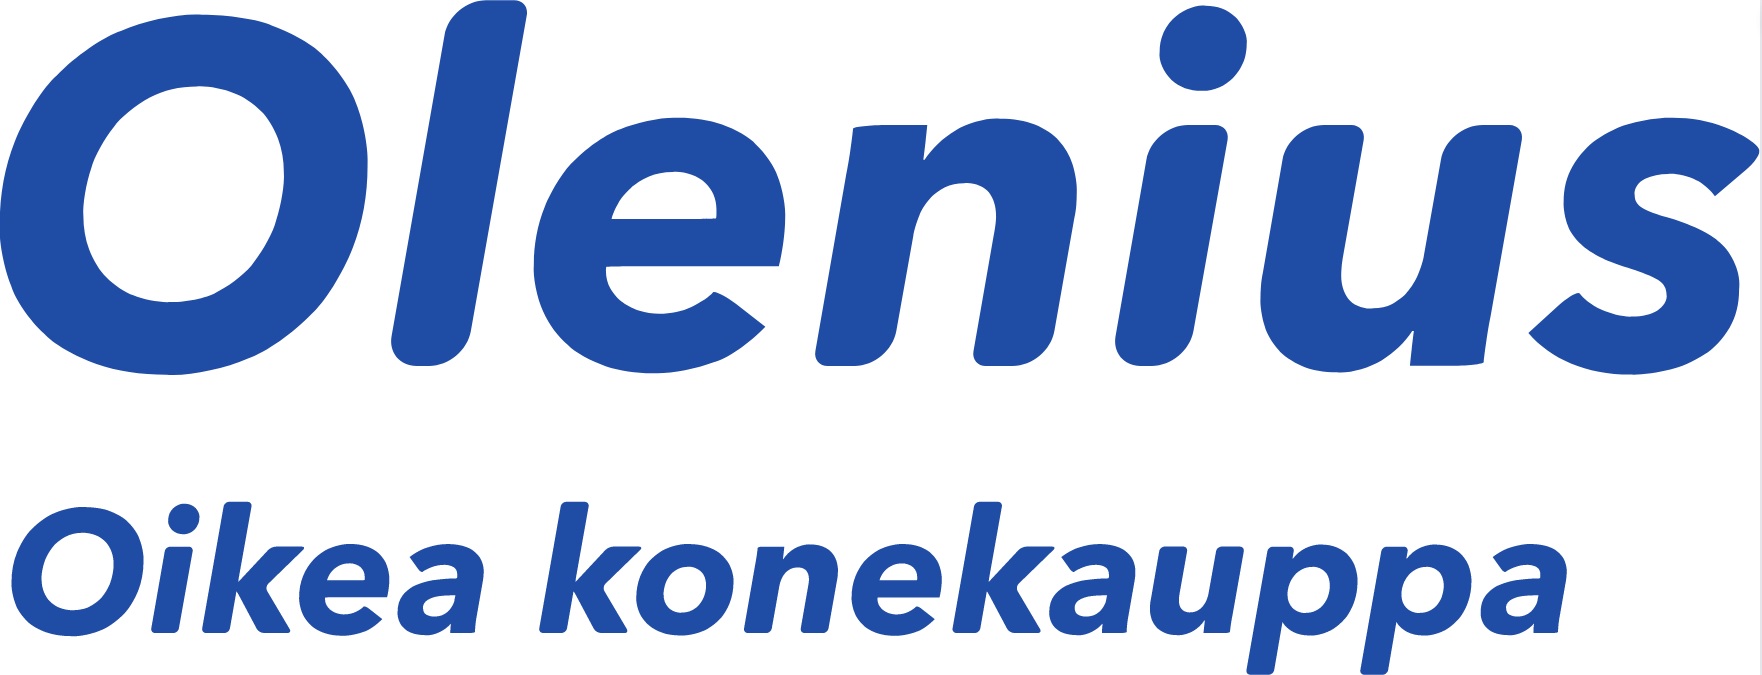 Olenius logo